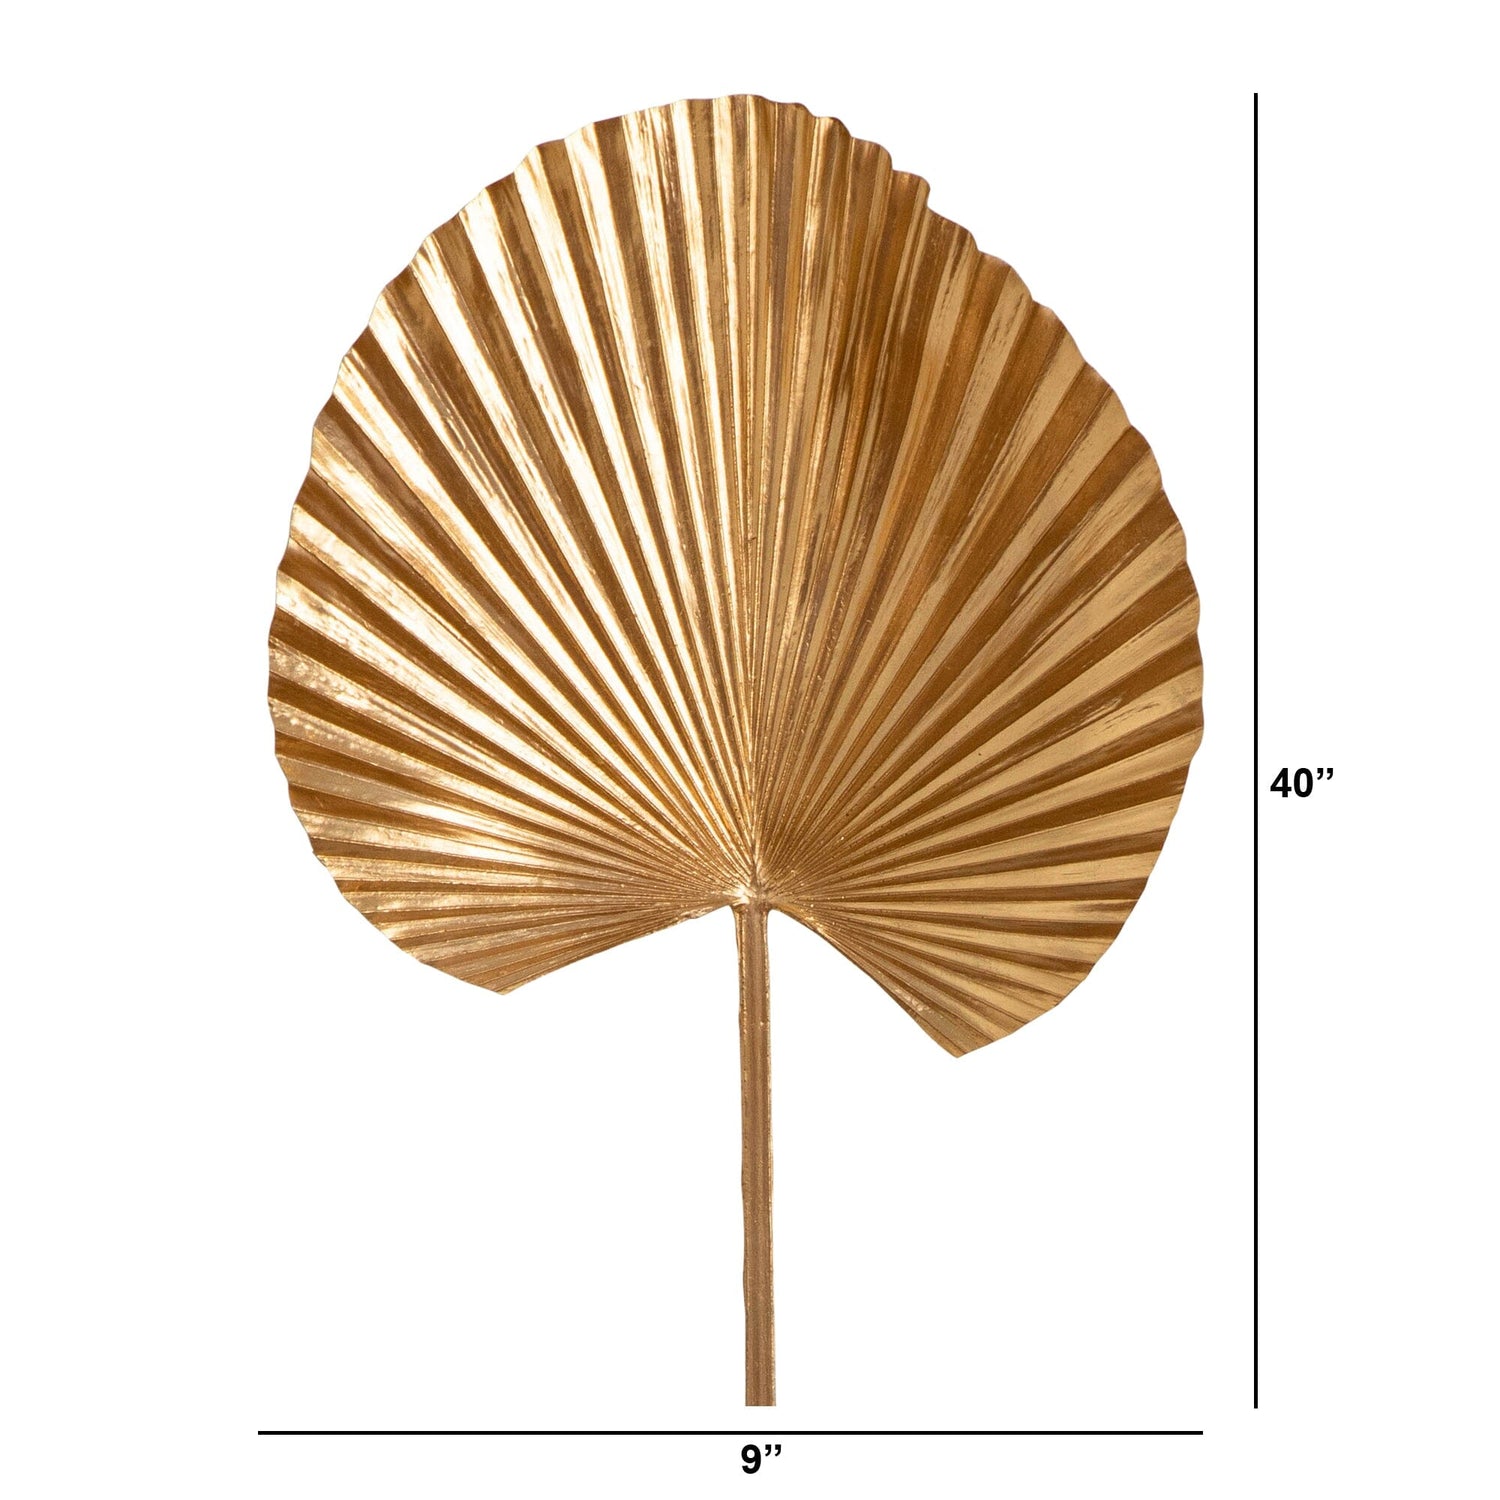 40" Artificial Golden Ruffled Fan Palm Stems - Set of 3